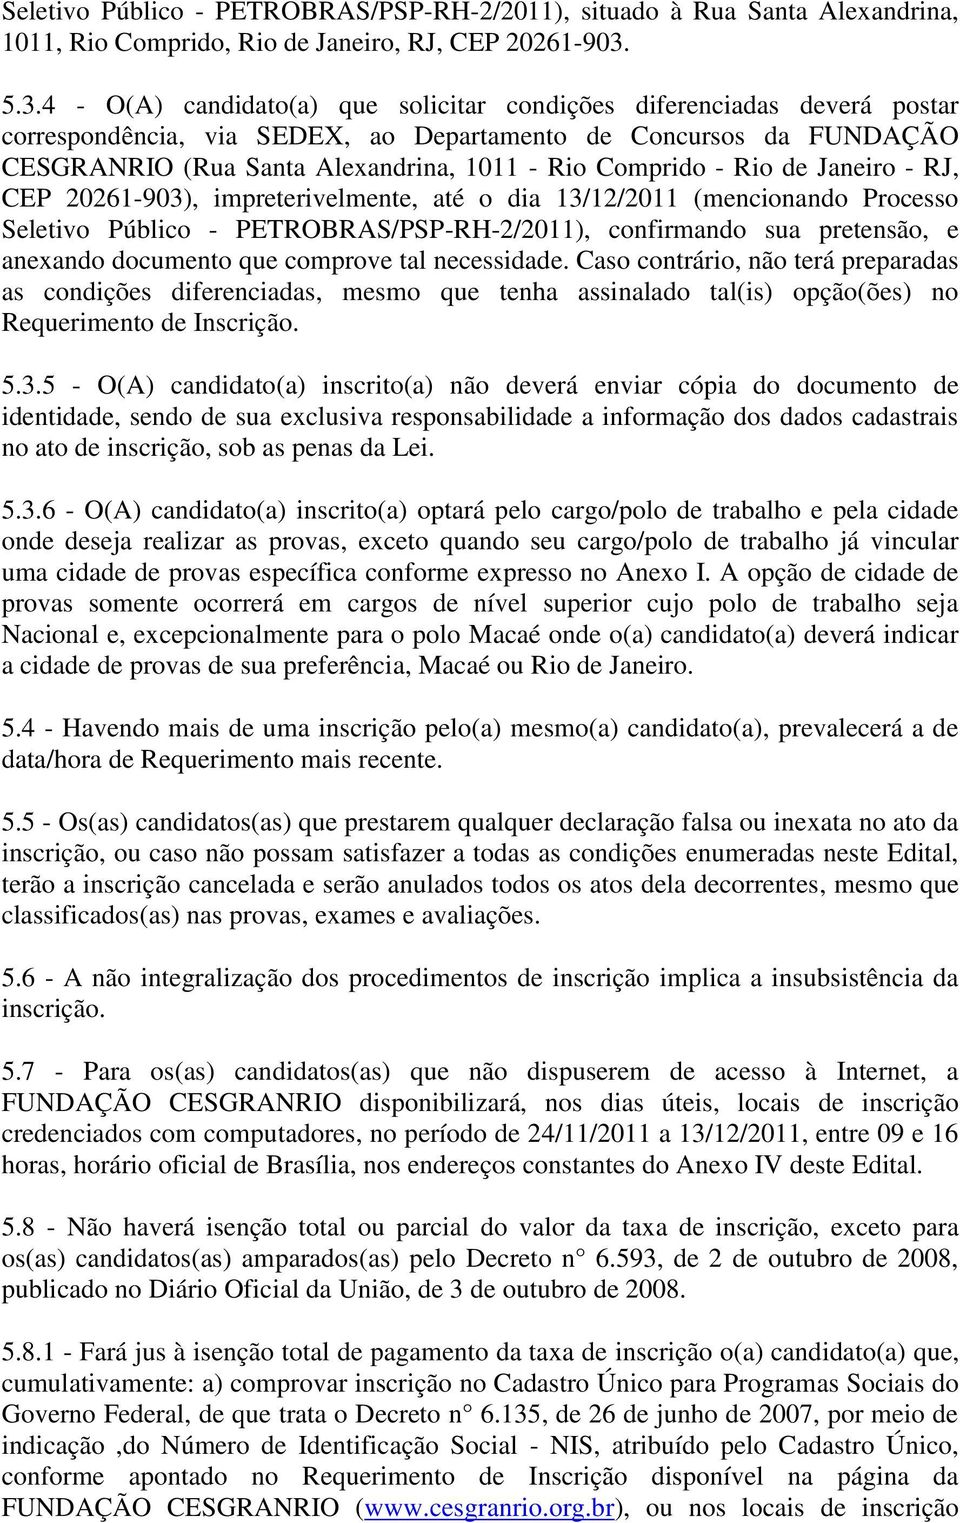 Comprido - Rio de Janeiro - RJ, CEP 20261-903), impreterivelmente, até o dia 13/12/2011 (mencionando Processo Seletivo Público - PETROBRAS/PSP-RH-2/2011), confirmando sua pretensão, e anexando